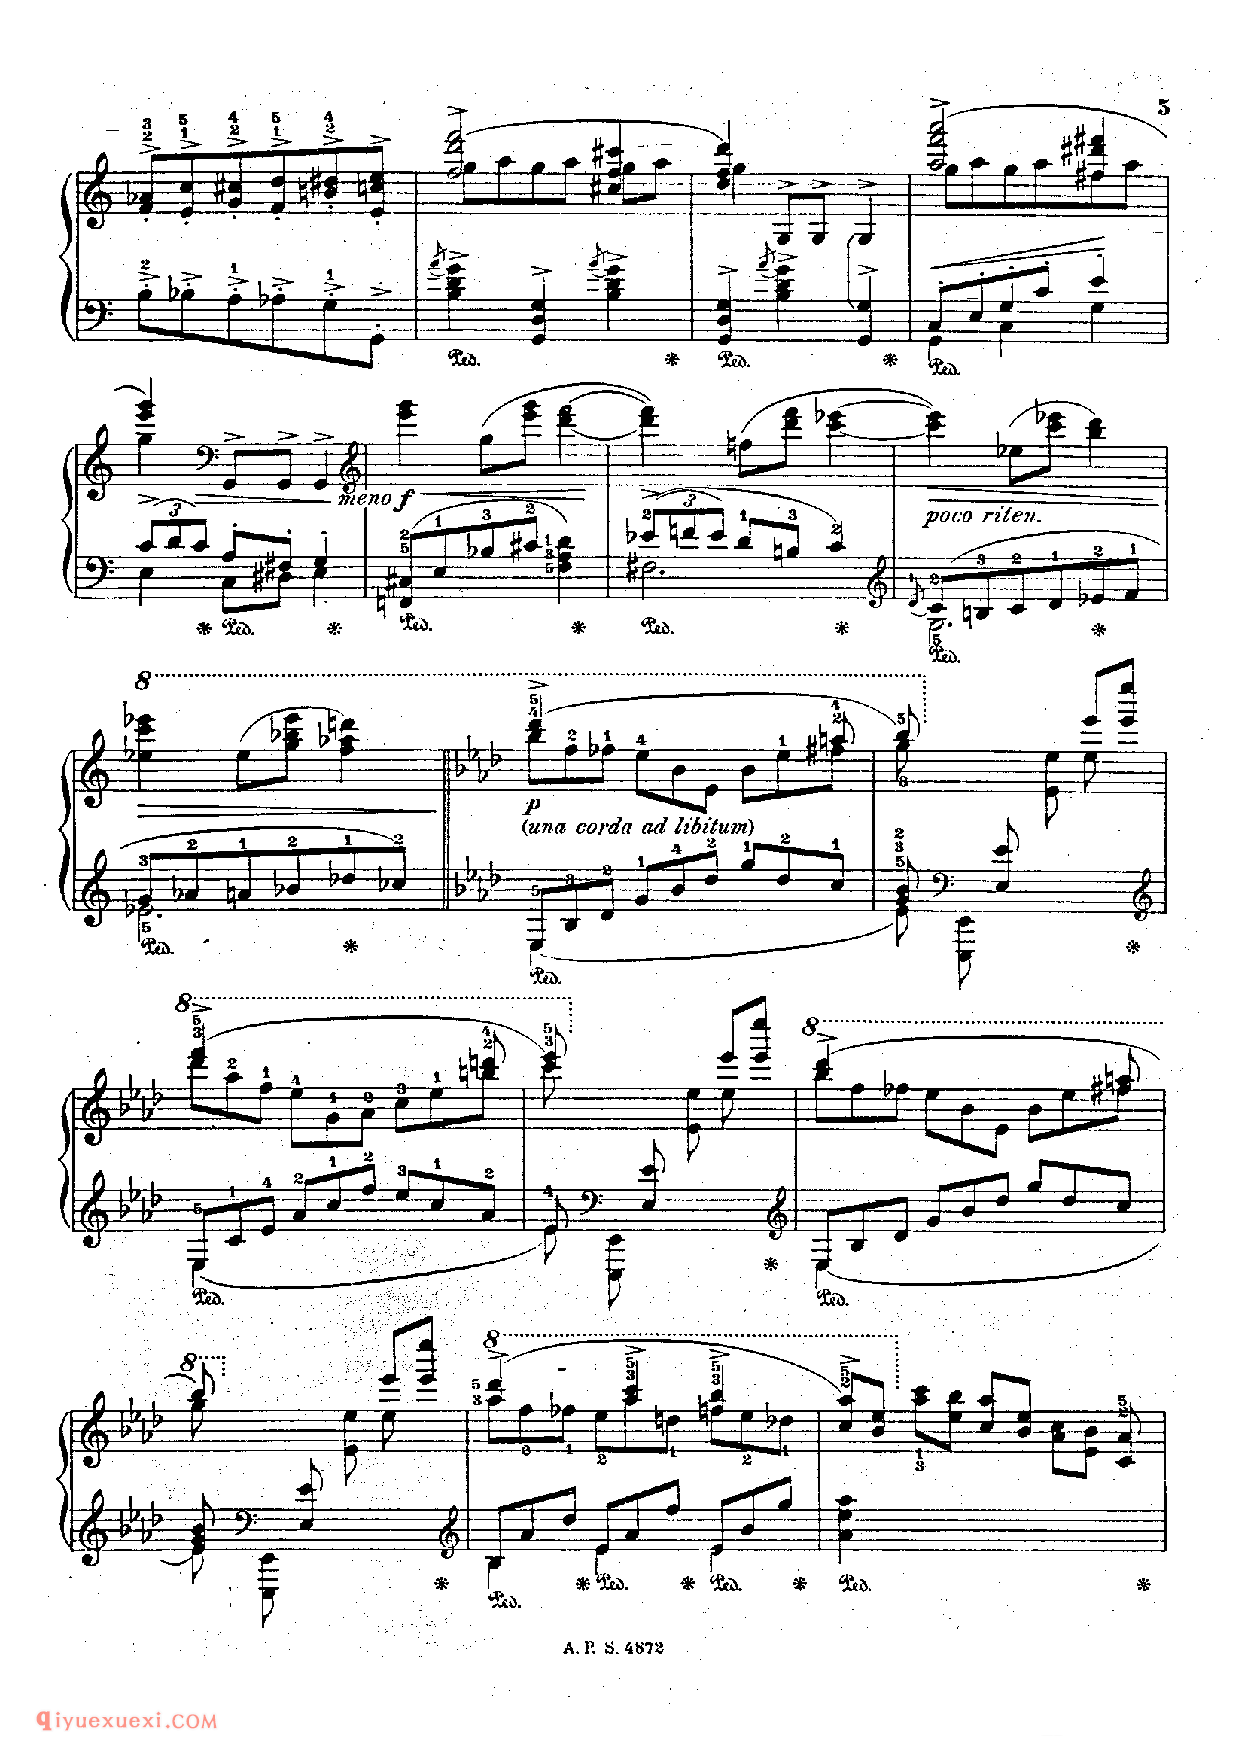 戈多夫斯基-肖邦圆舞曲 Op18_Godowsky-Chopin Waltz Op18_超高难度钢琴谱